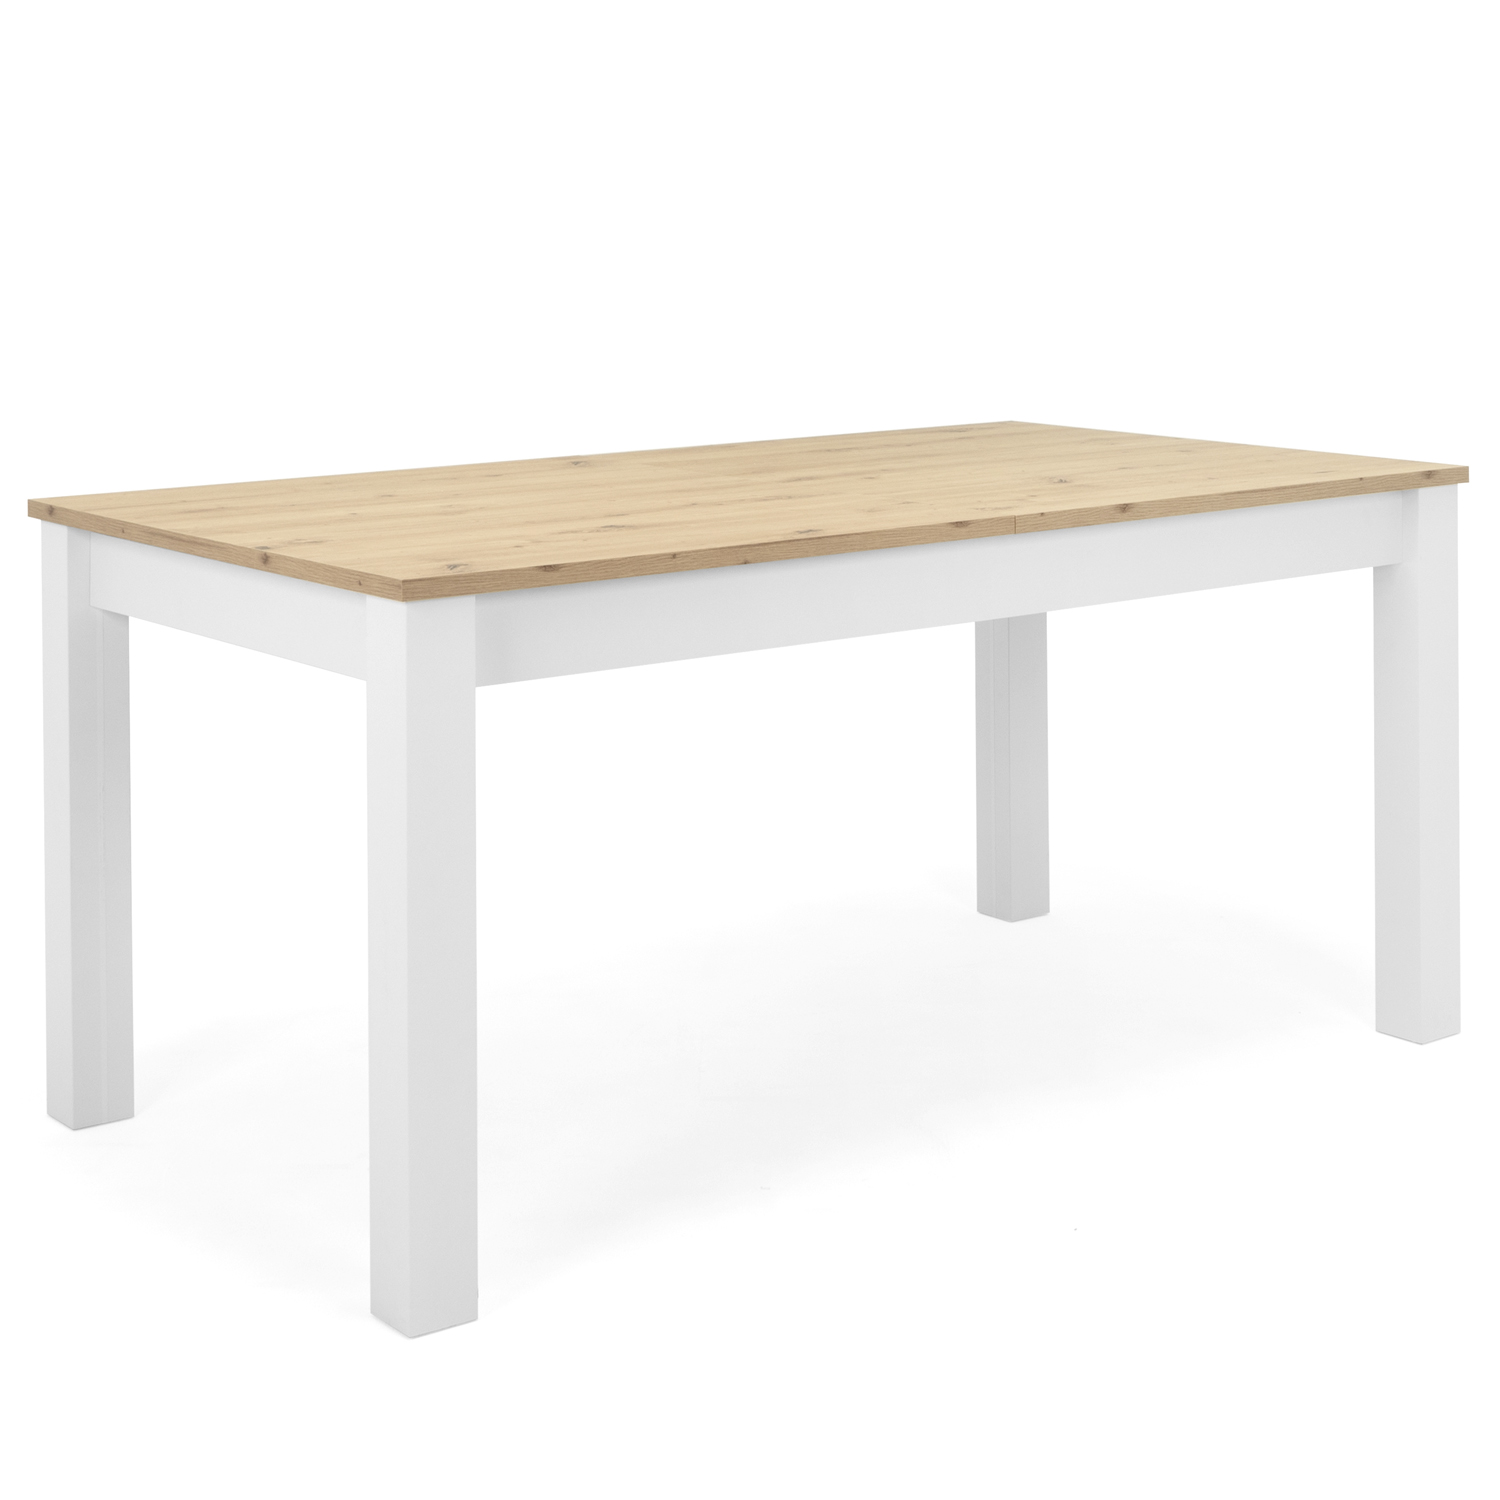 Table à rallonges Table à manger Table extensible Table en bois Chêne Blanc